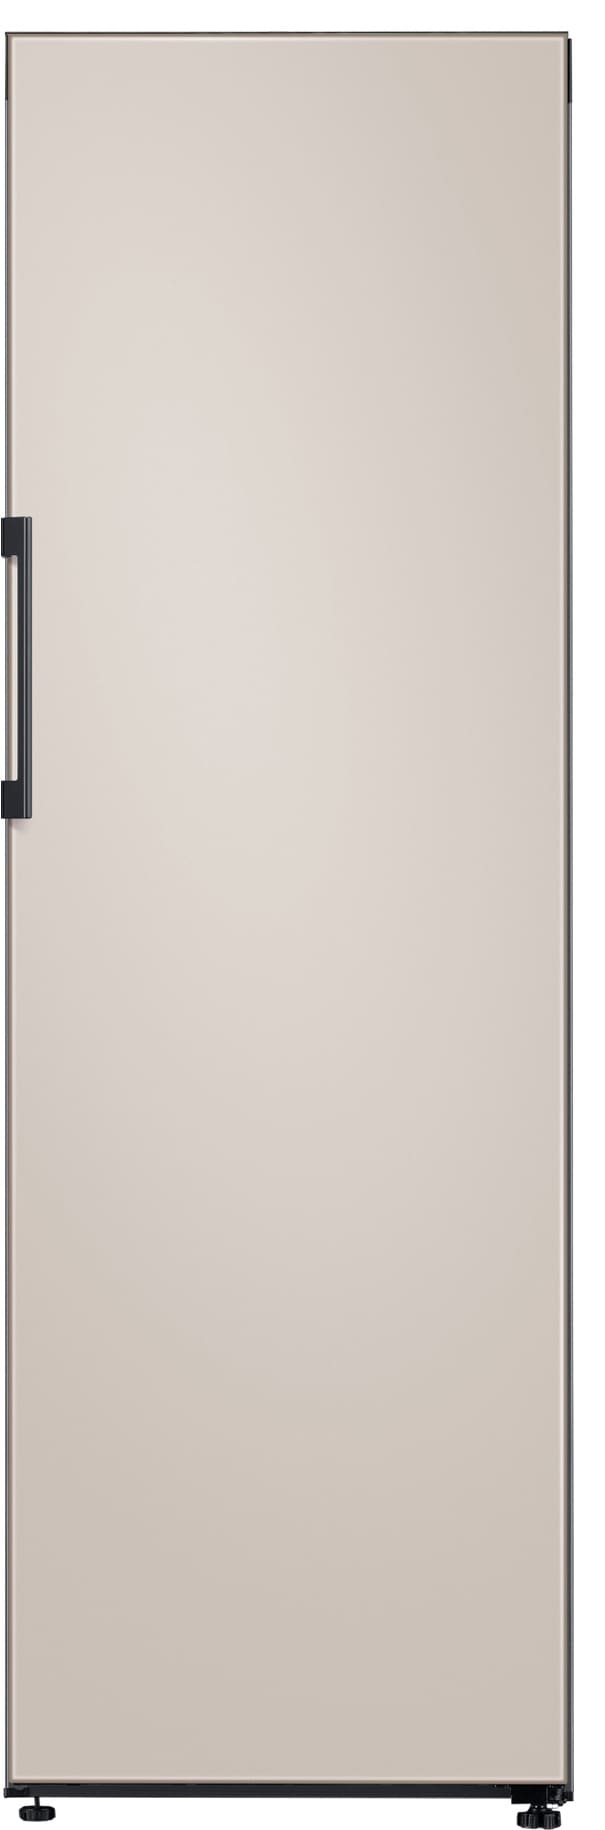 Samsung køleskab RR39T746339/EF